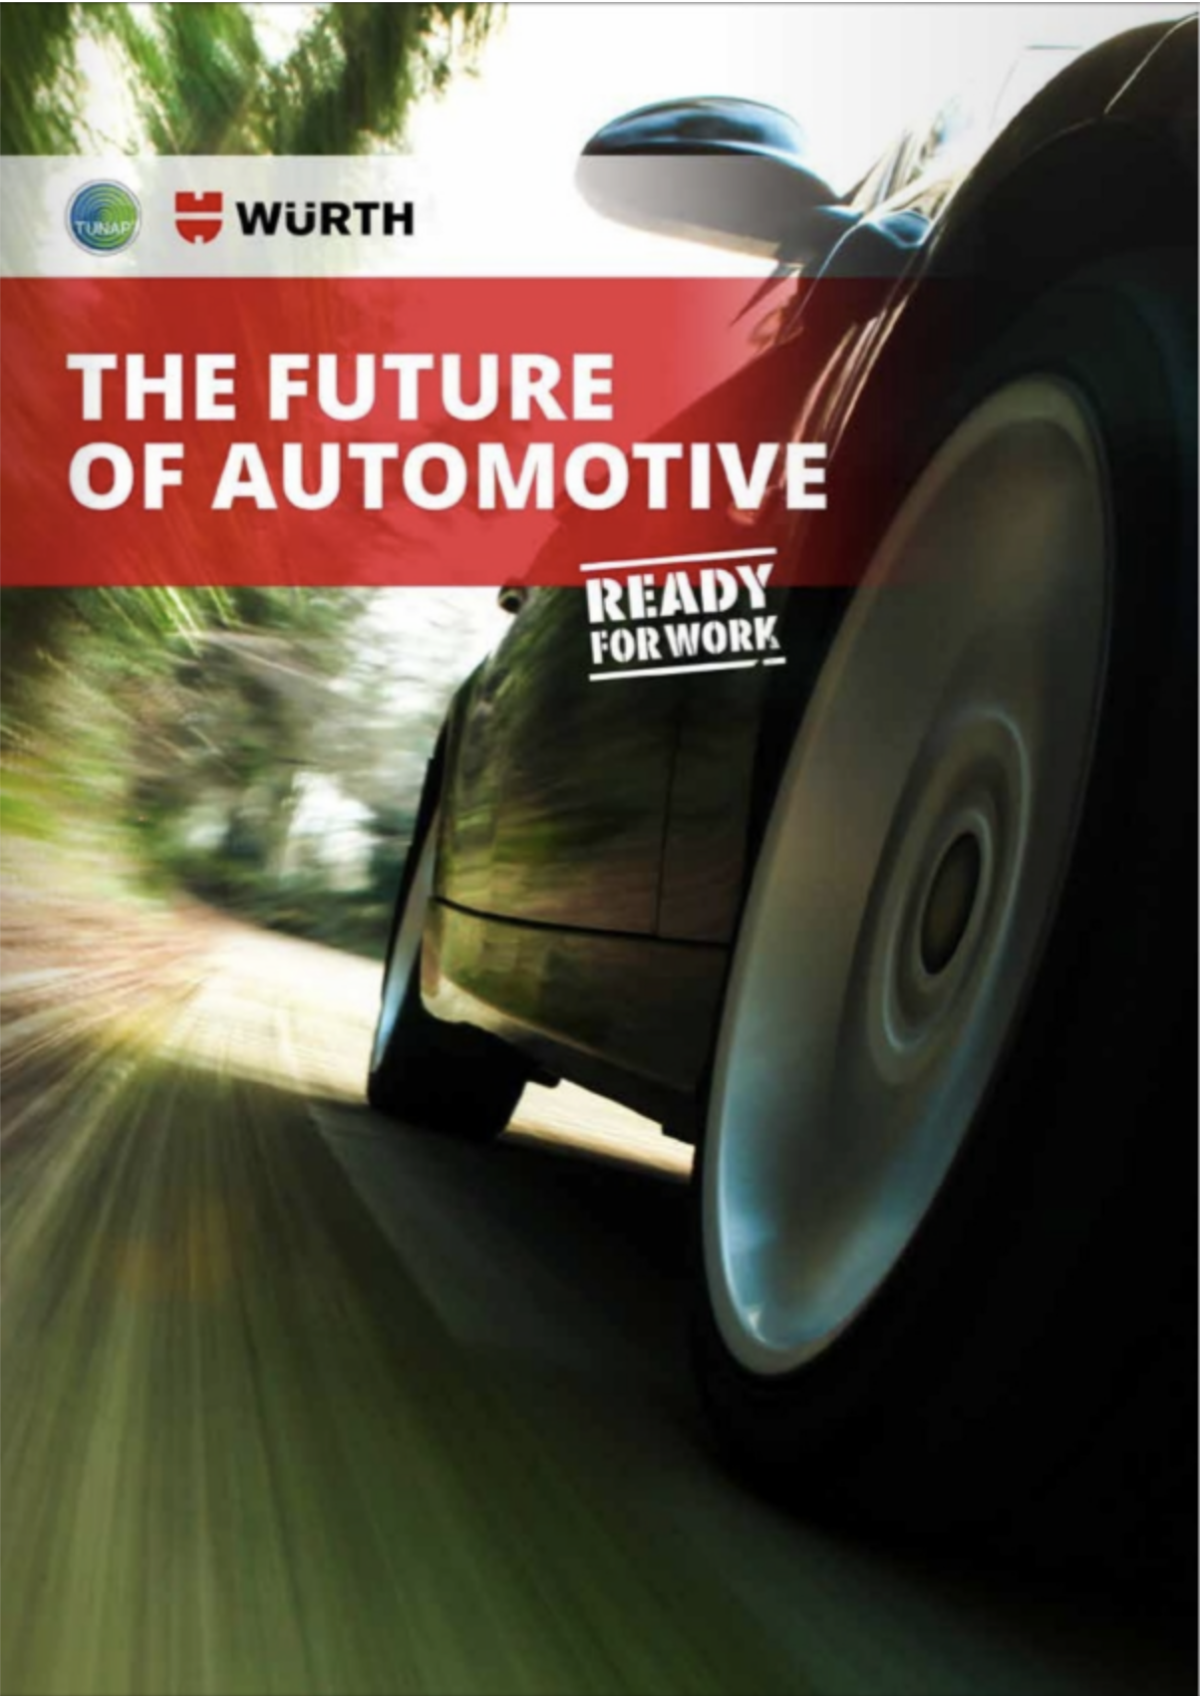 Tunap: The future of automotive